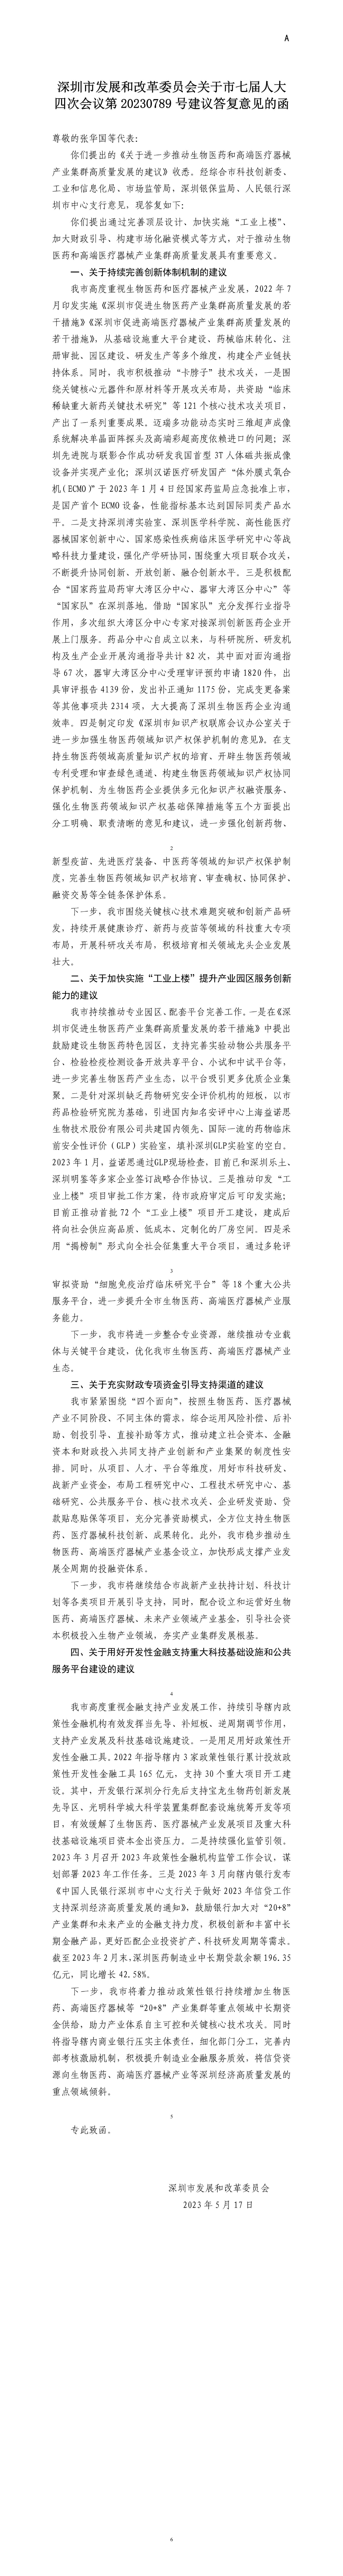 深圳市发展和改革委员会关于市七届人大四次会议第20230789号建议答复意见的函.jpg